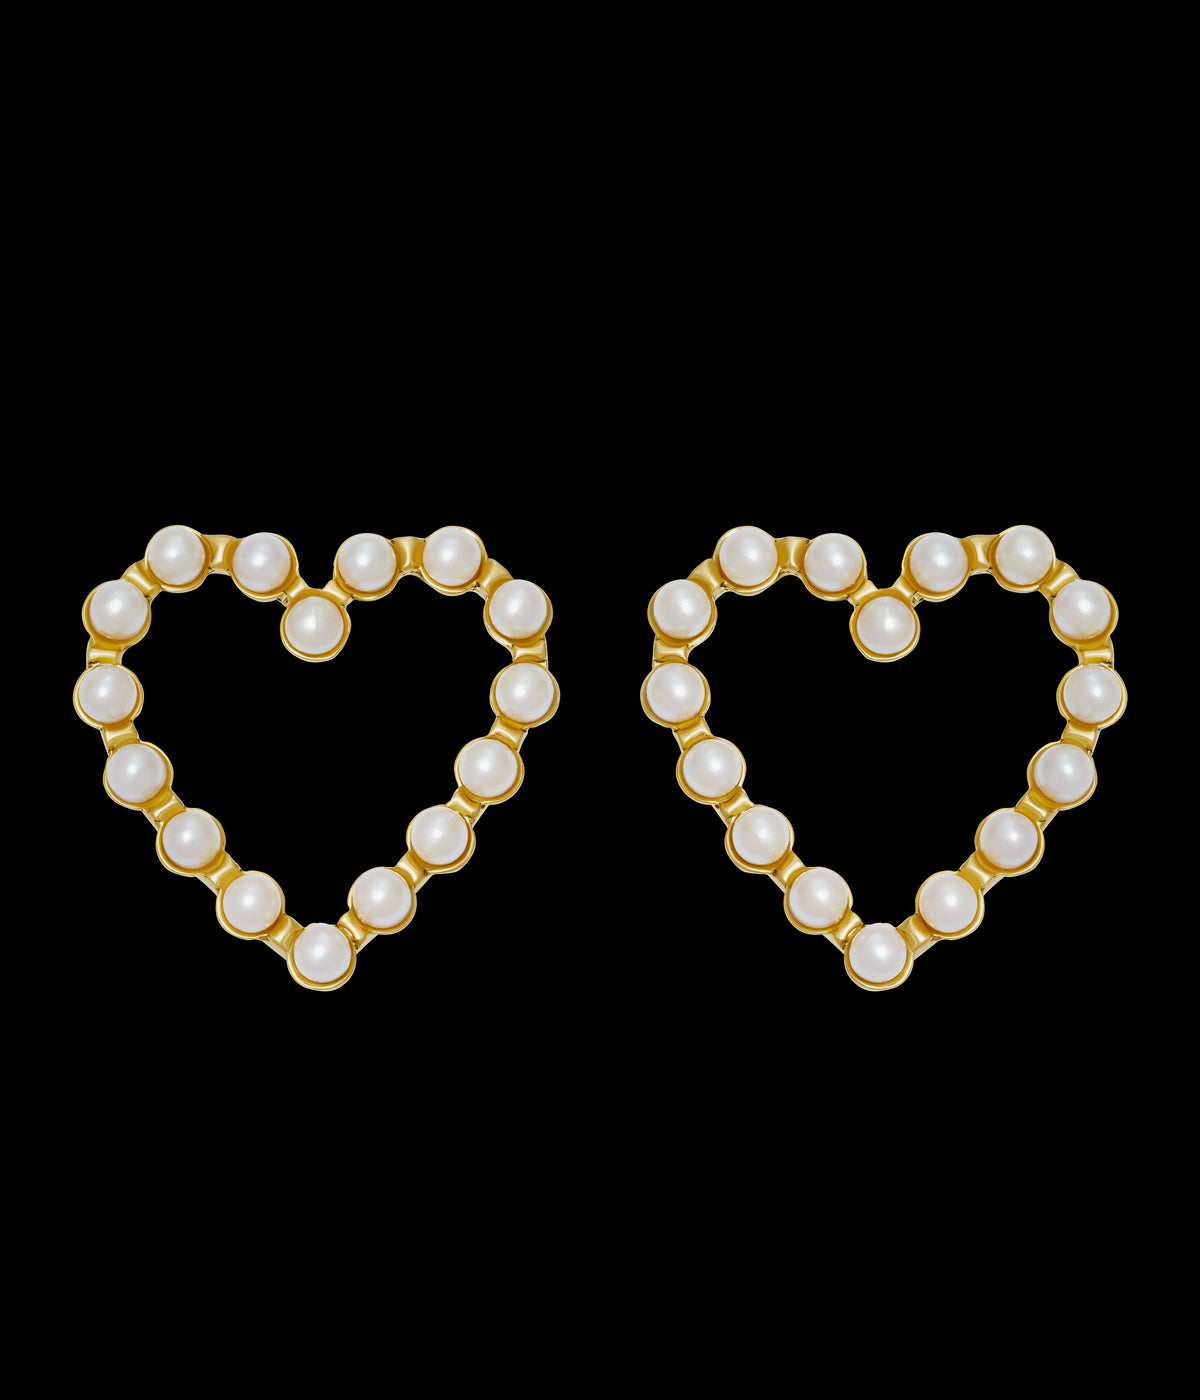 Sweetheart Earrings in Pearl